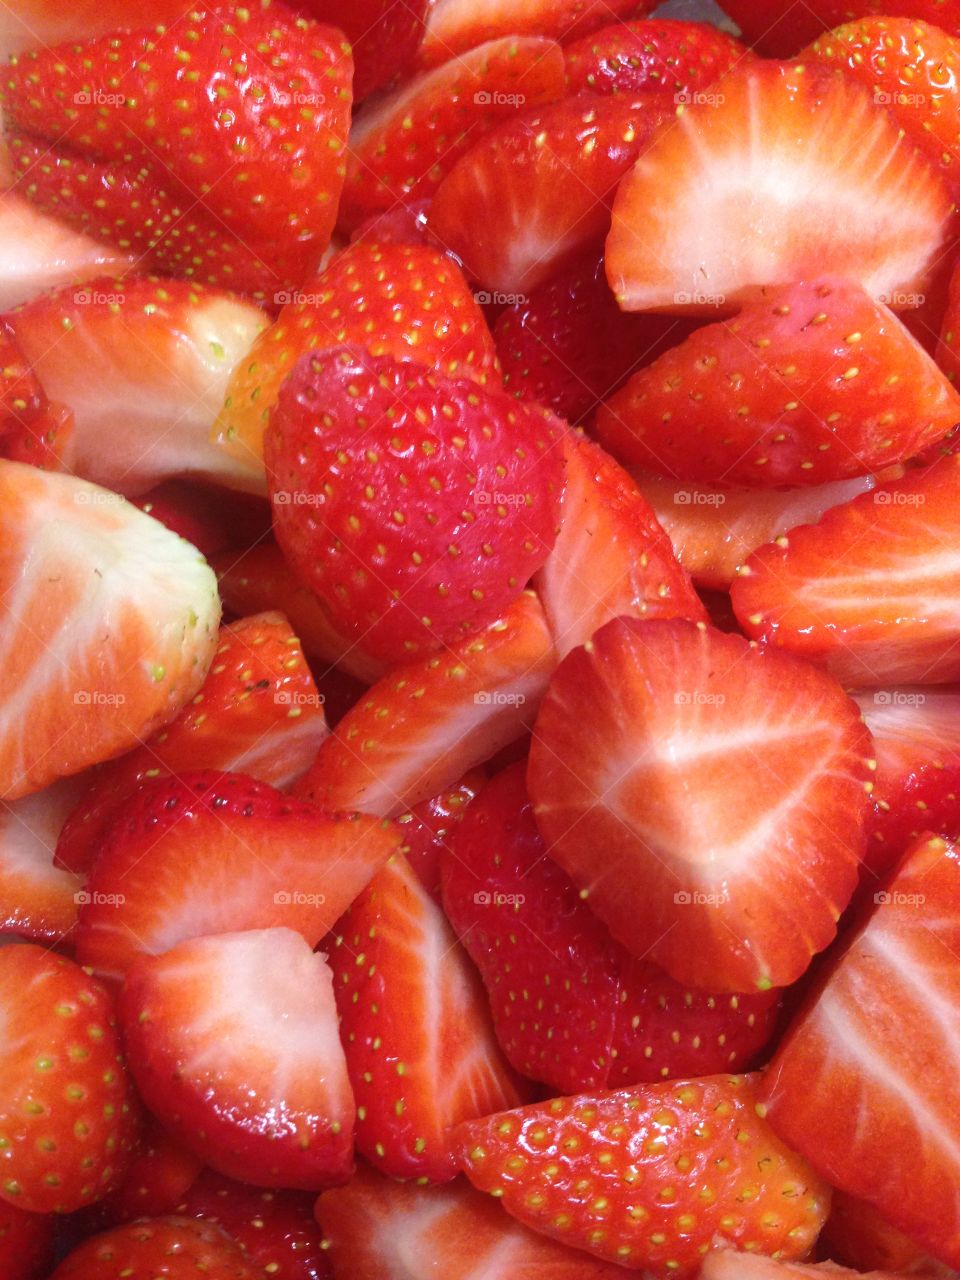 Sweet strawberries yum!